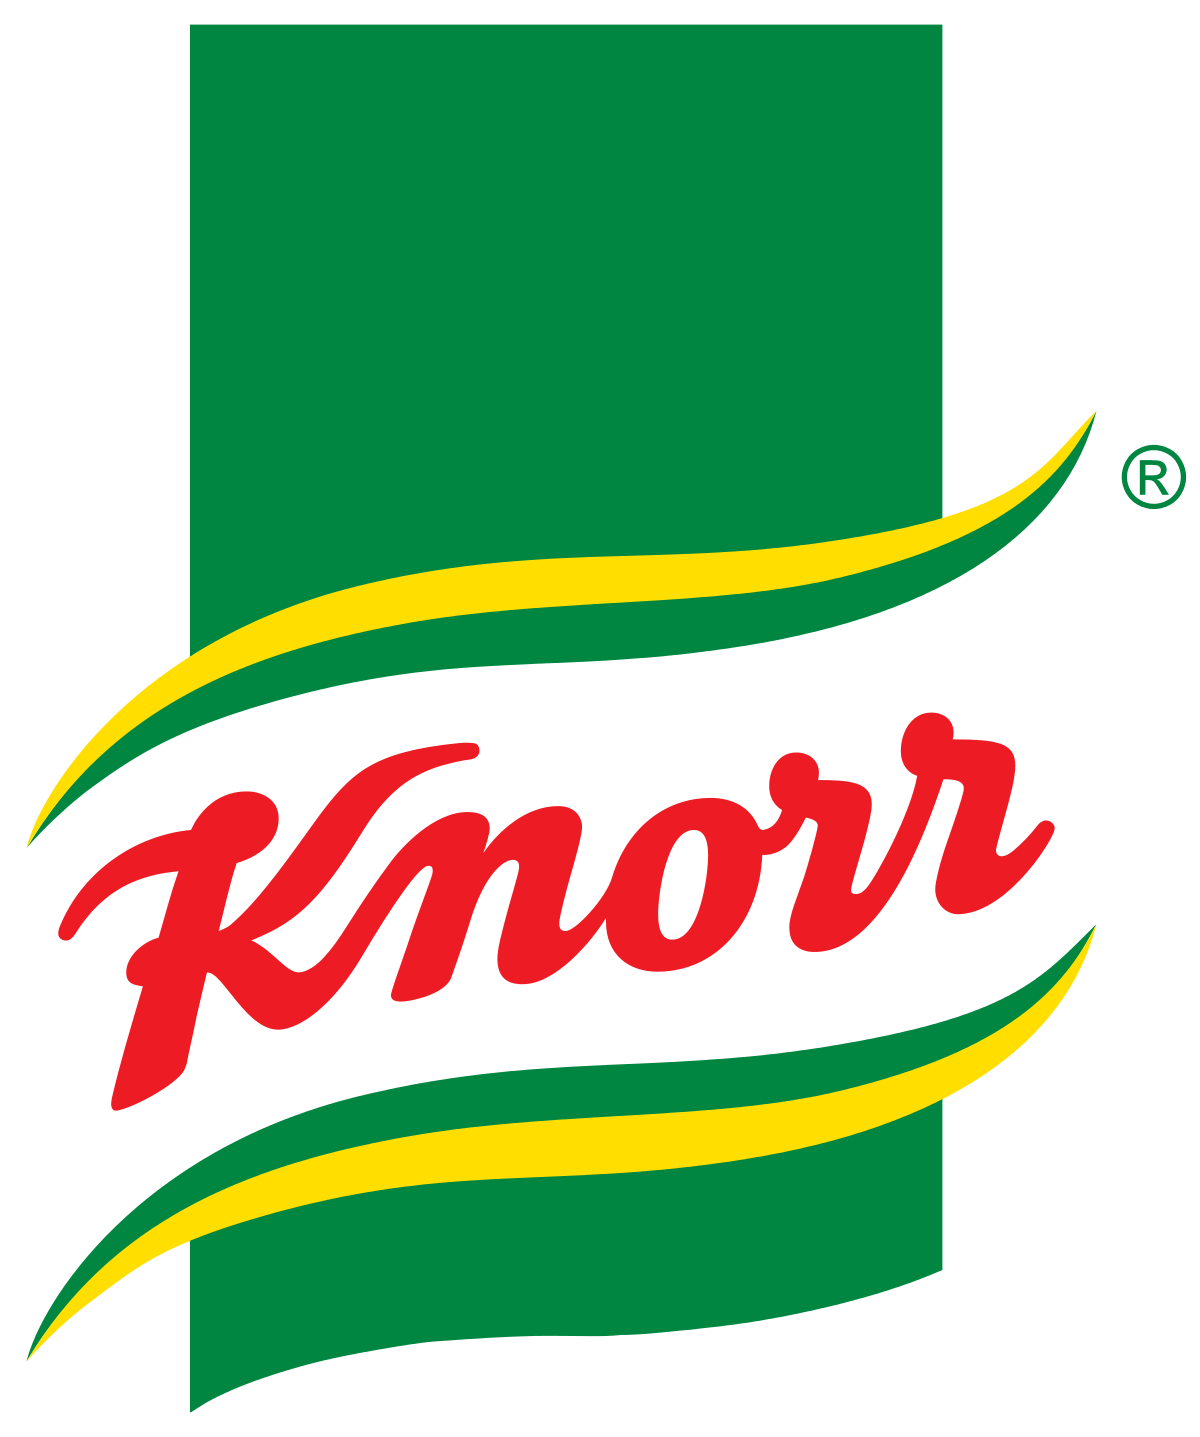 Knorr Image